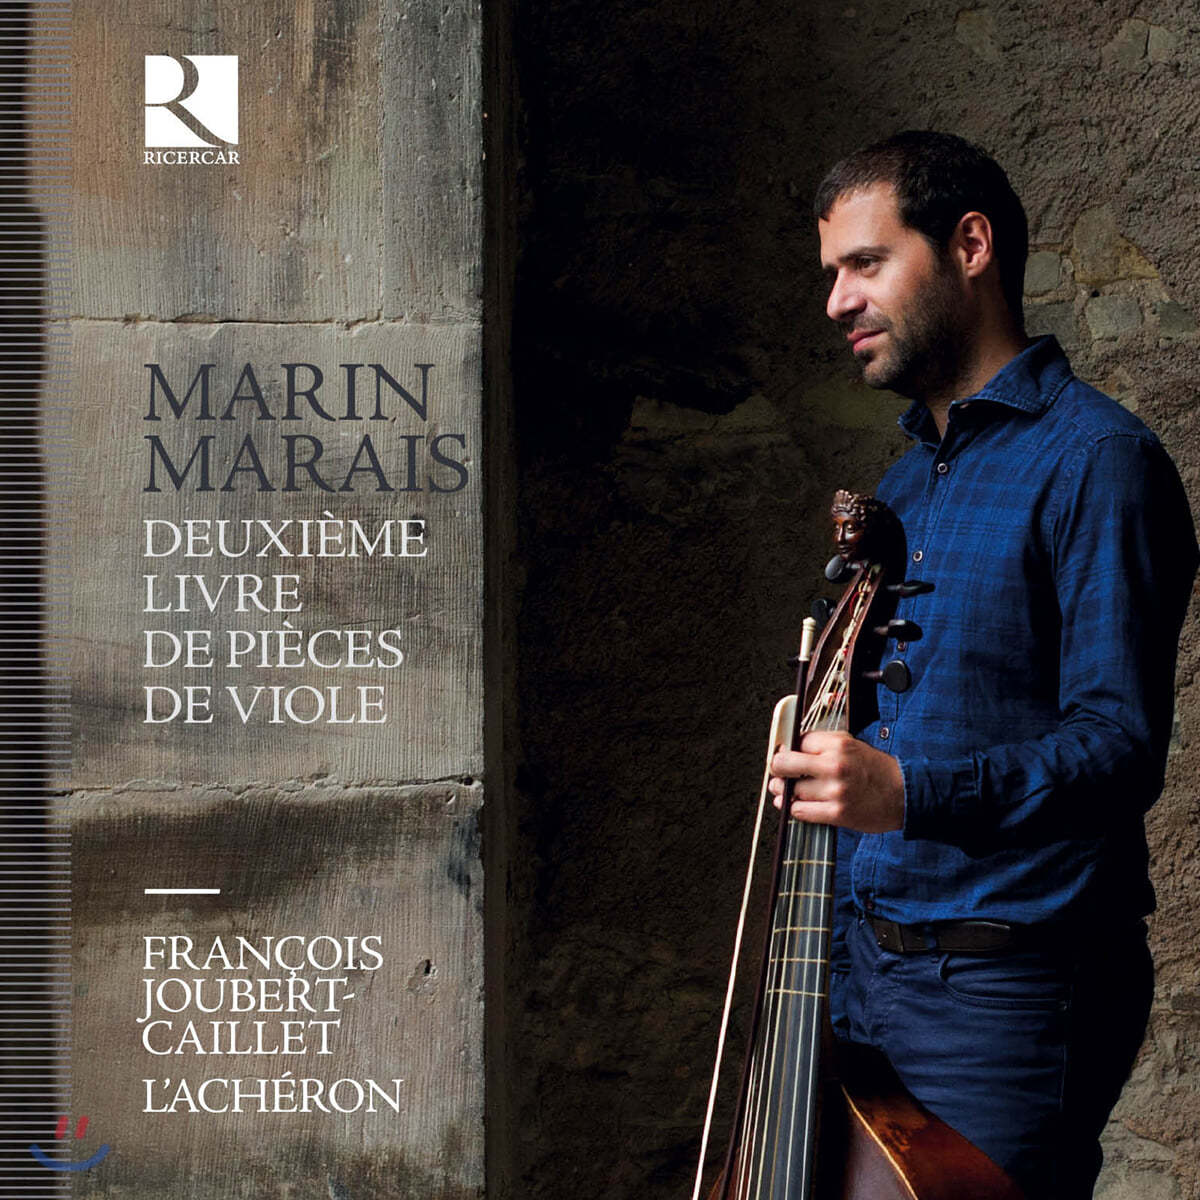 Francois Joubert-Caillet 마랭 마레: 비올라 다 감바 작품집 2권 전곡 (Marin Marais: Deuxieme livre de pieces de viole)